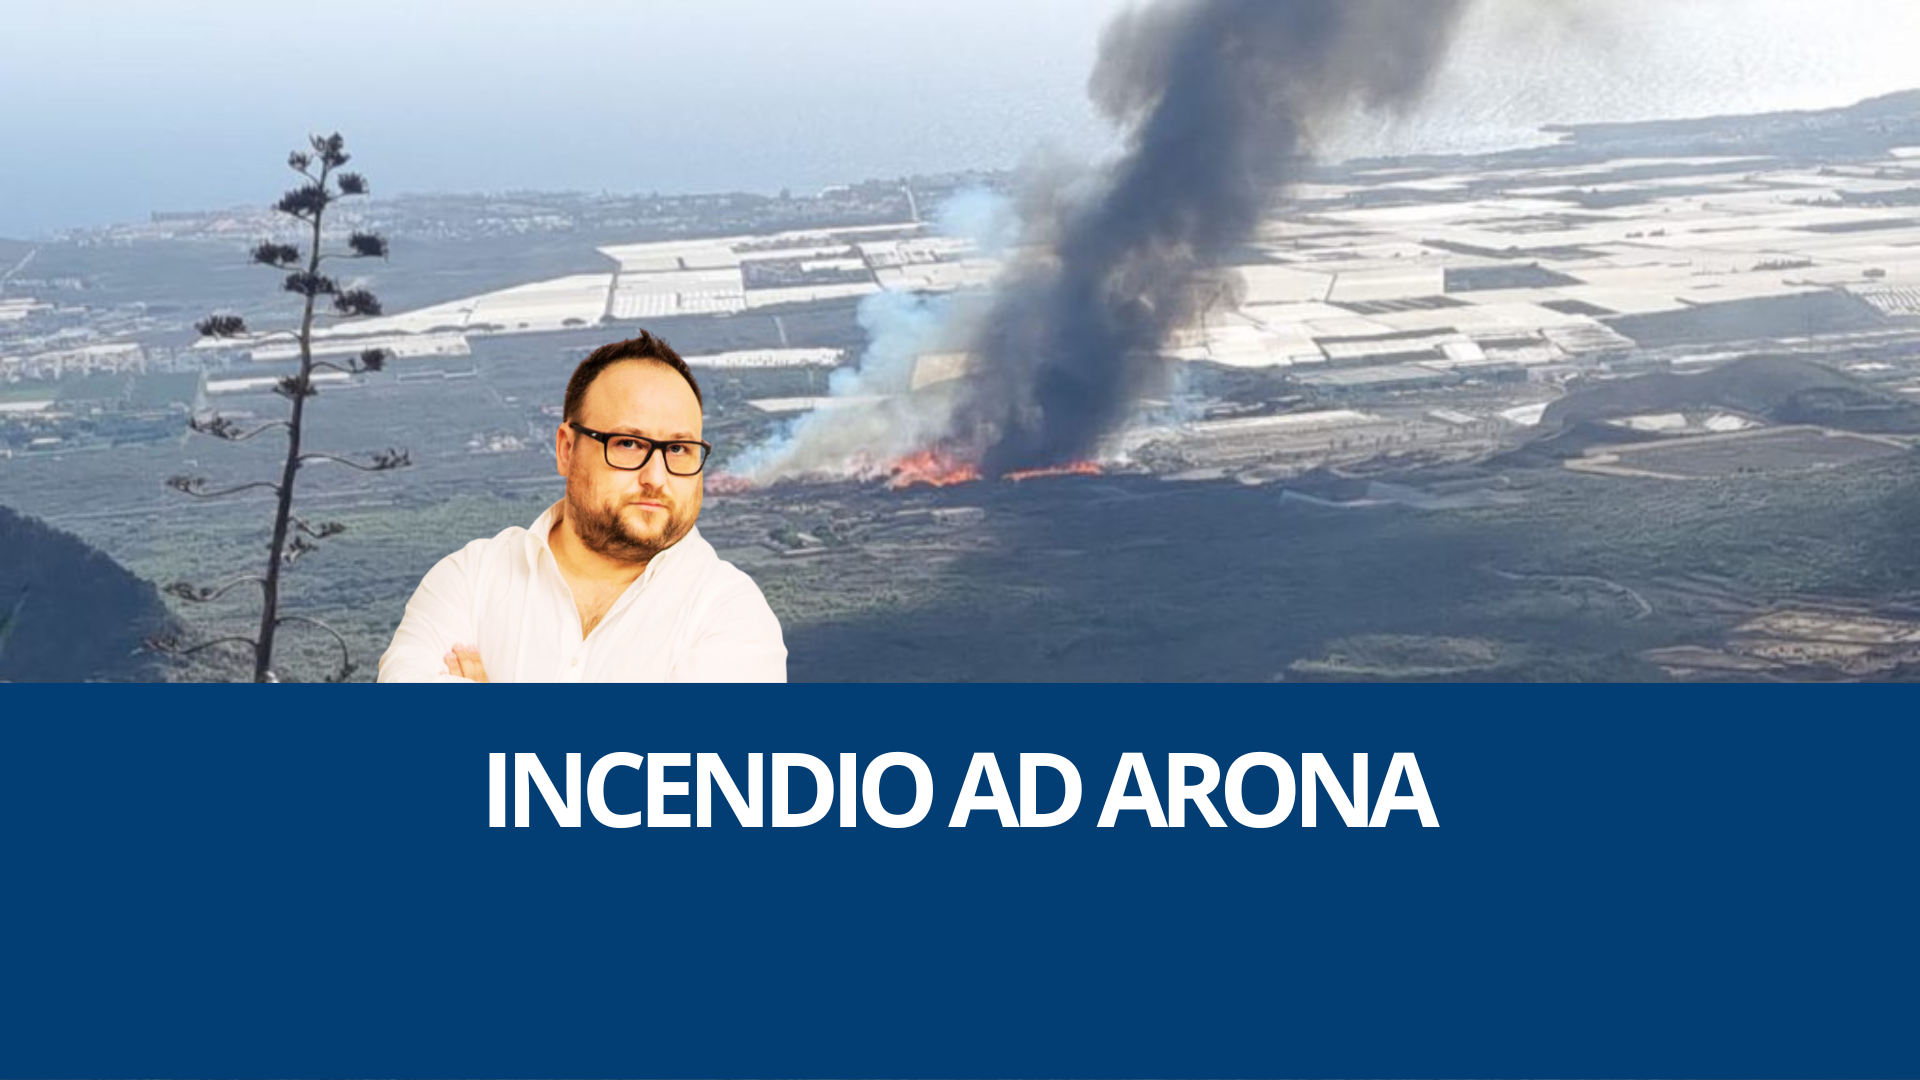 Incendio ad Arona: Consigli e Precauzioni per Residenti e Turisti a Tenerife